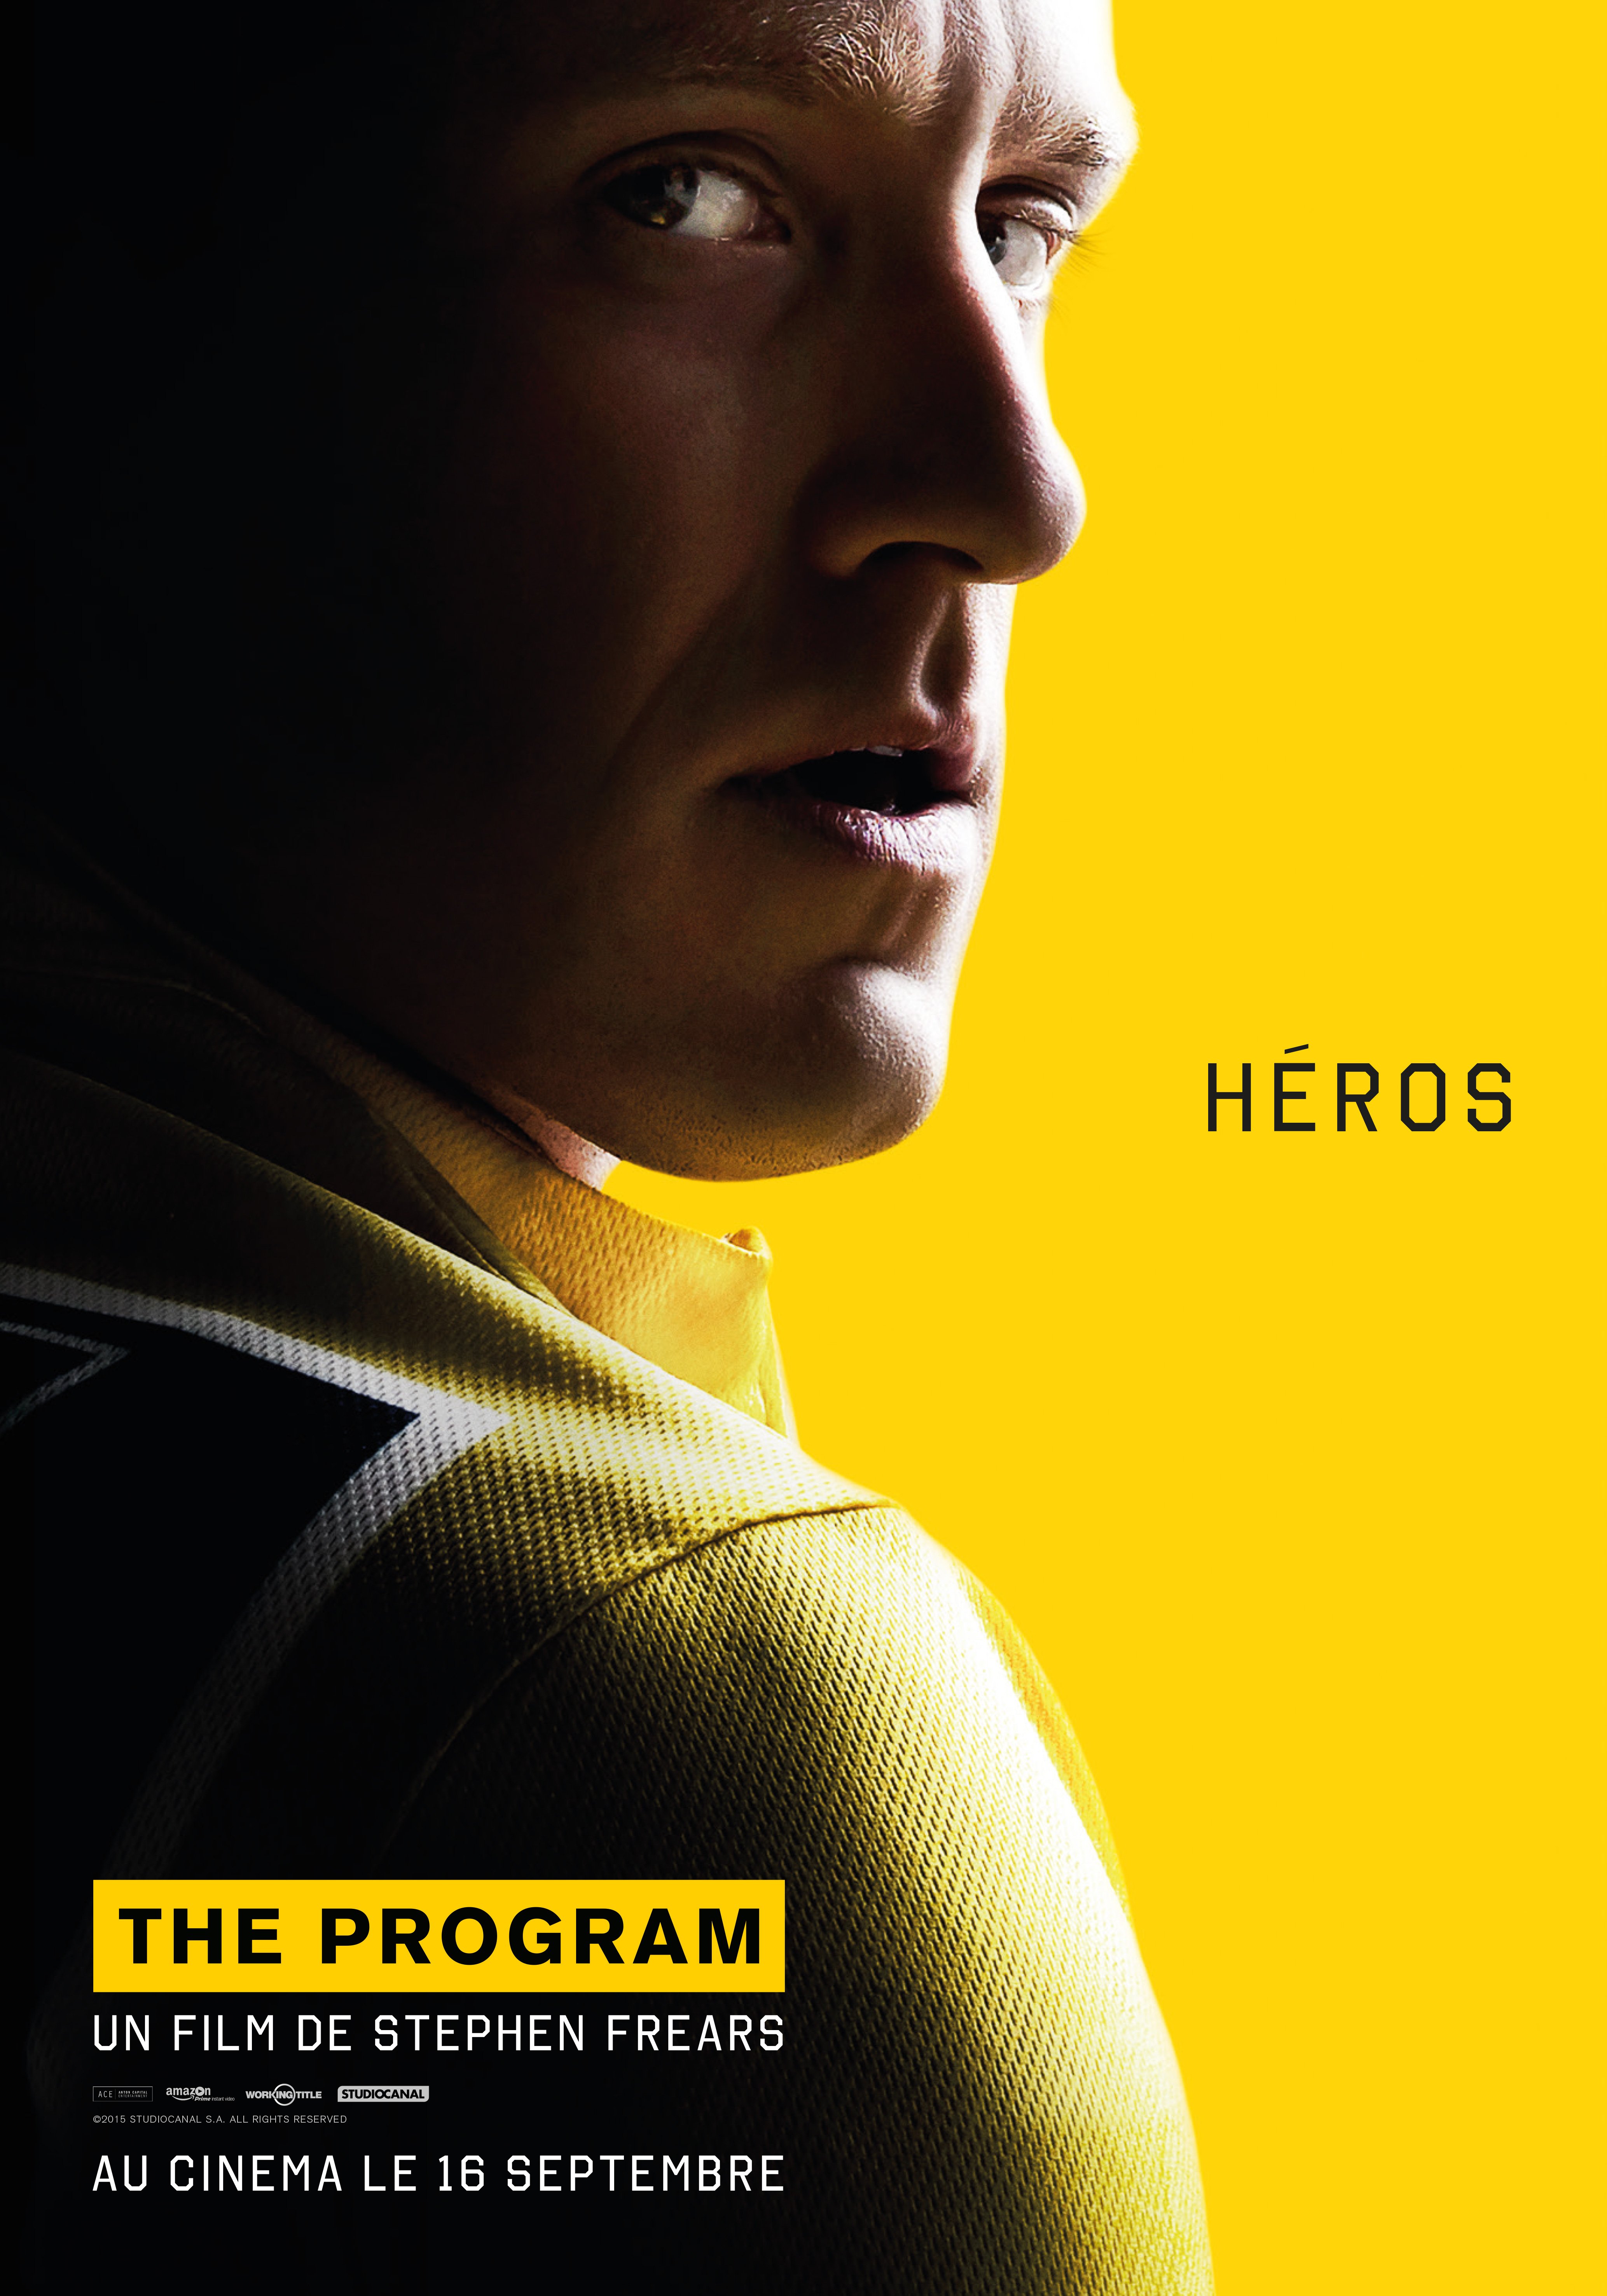 Affiche du film The Program réalisé par Stephen Frears avec Ben Foster et la tagline 'Héros'